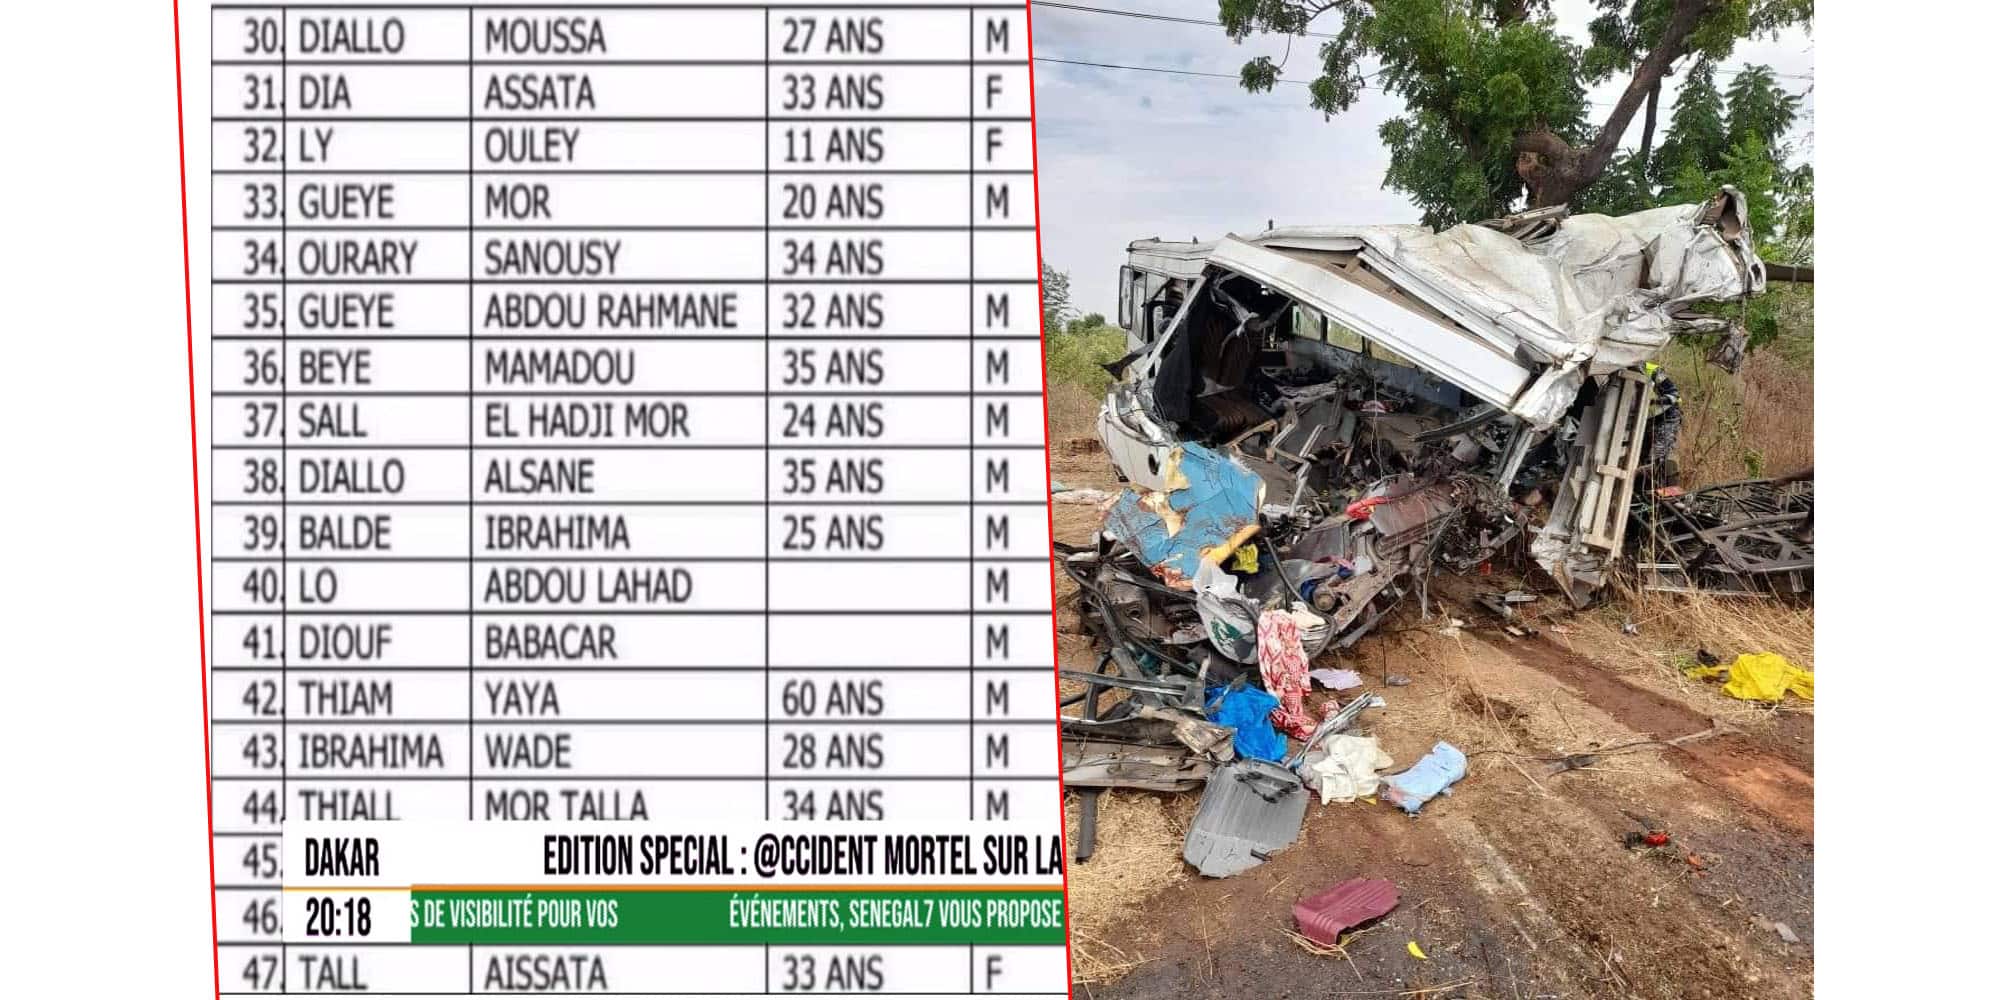 Urgent - Voici la liste des victimes de l'accident sur la route de Kaffrine